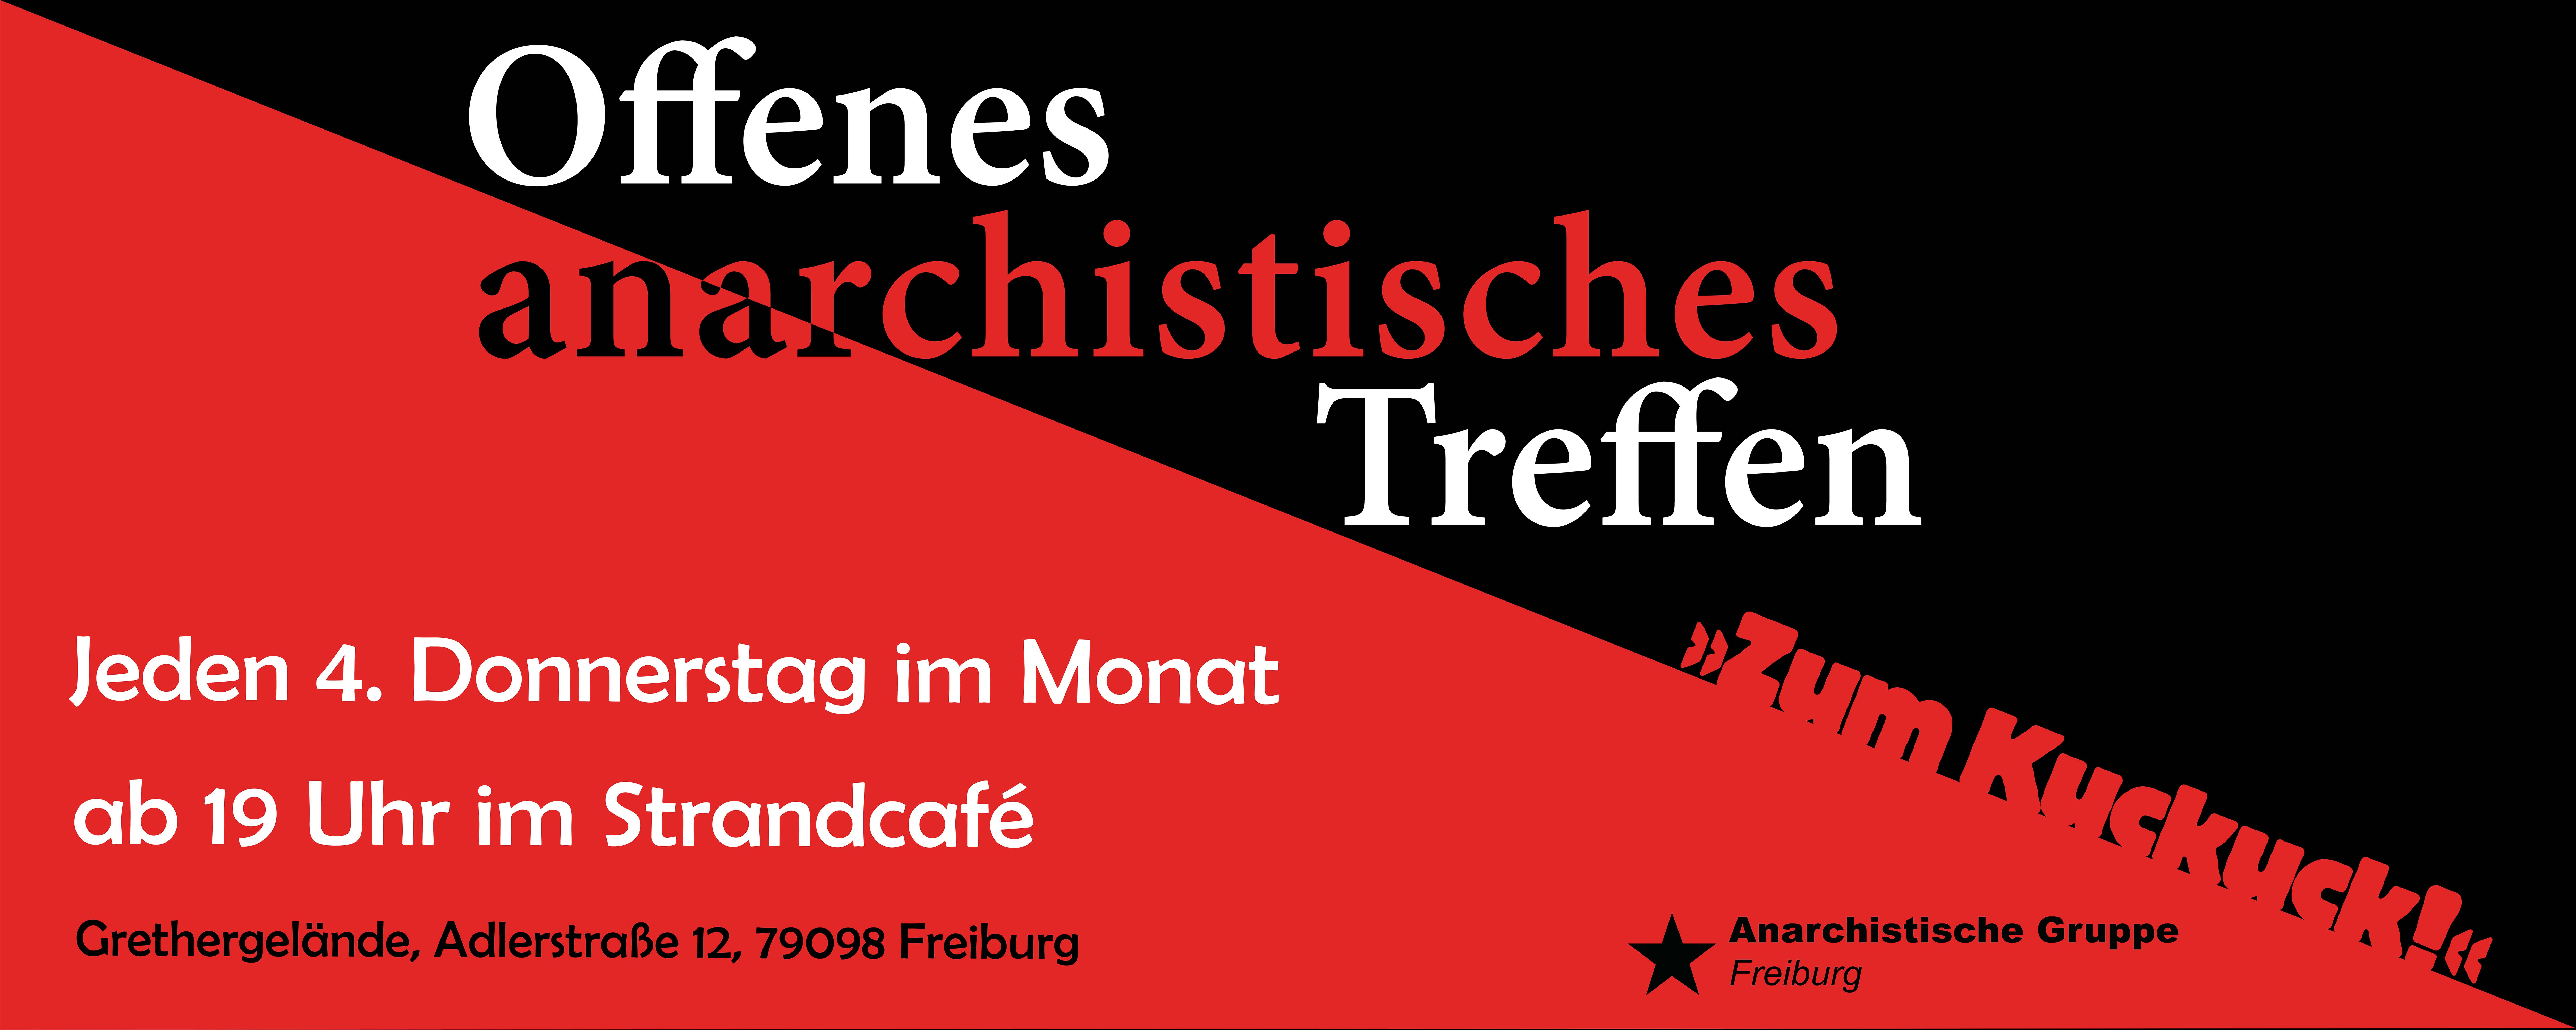 Zum Kuckuck! Einladung zum offenen anarchistischen Treffen für Freiburg und Region